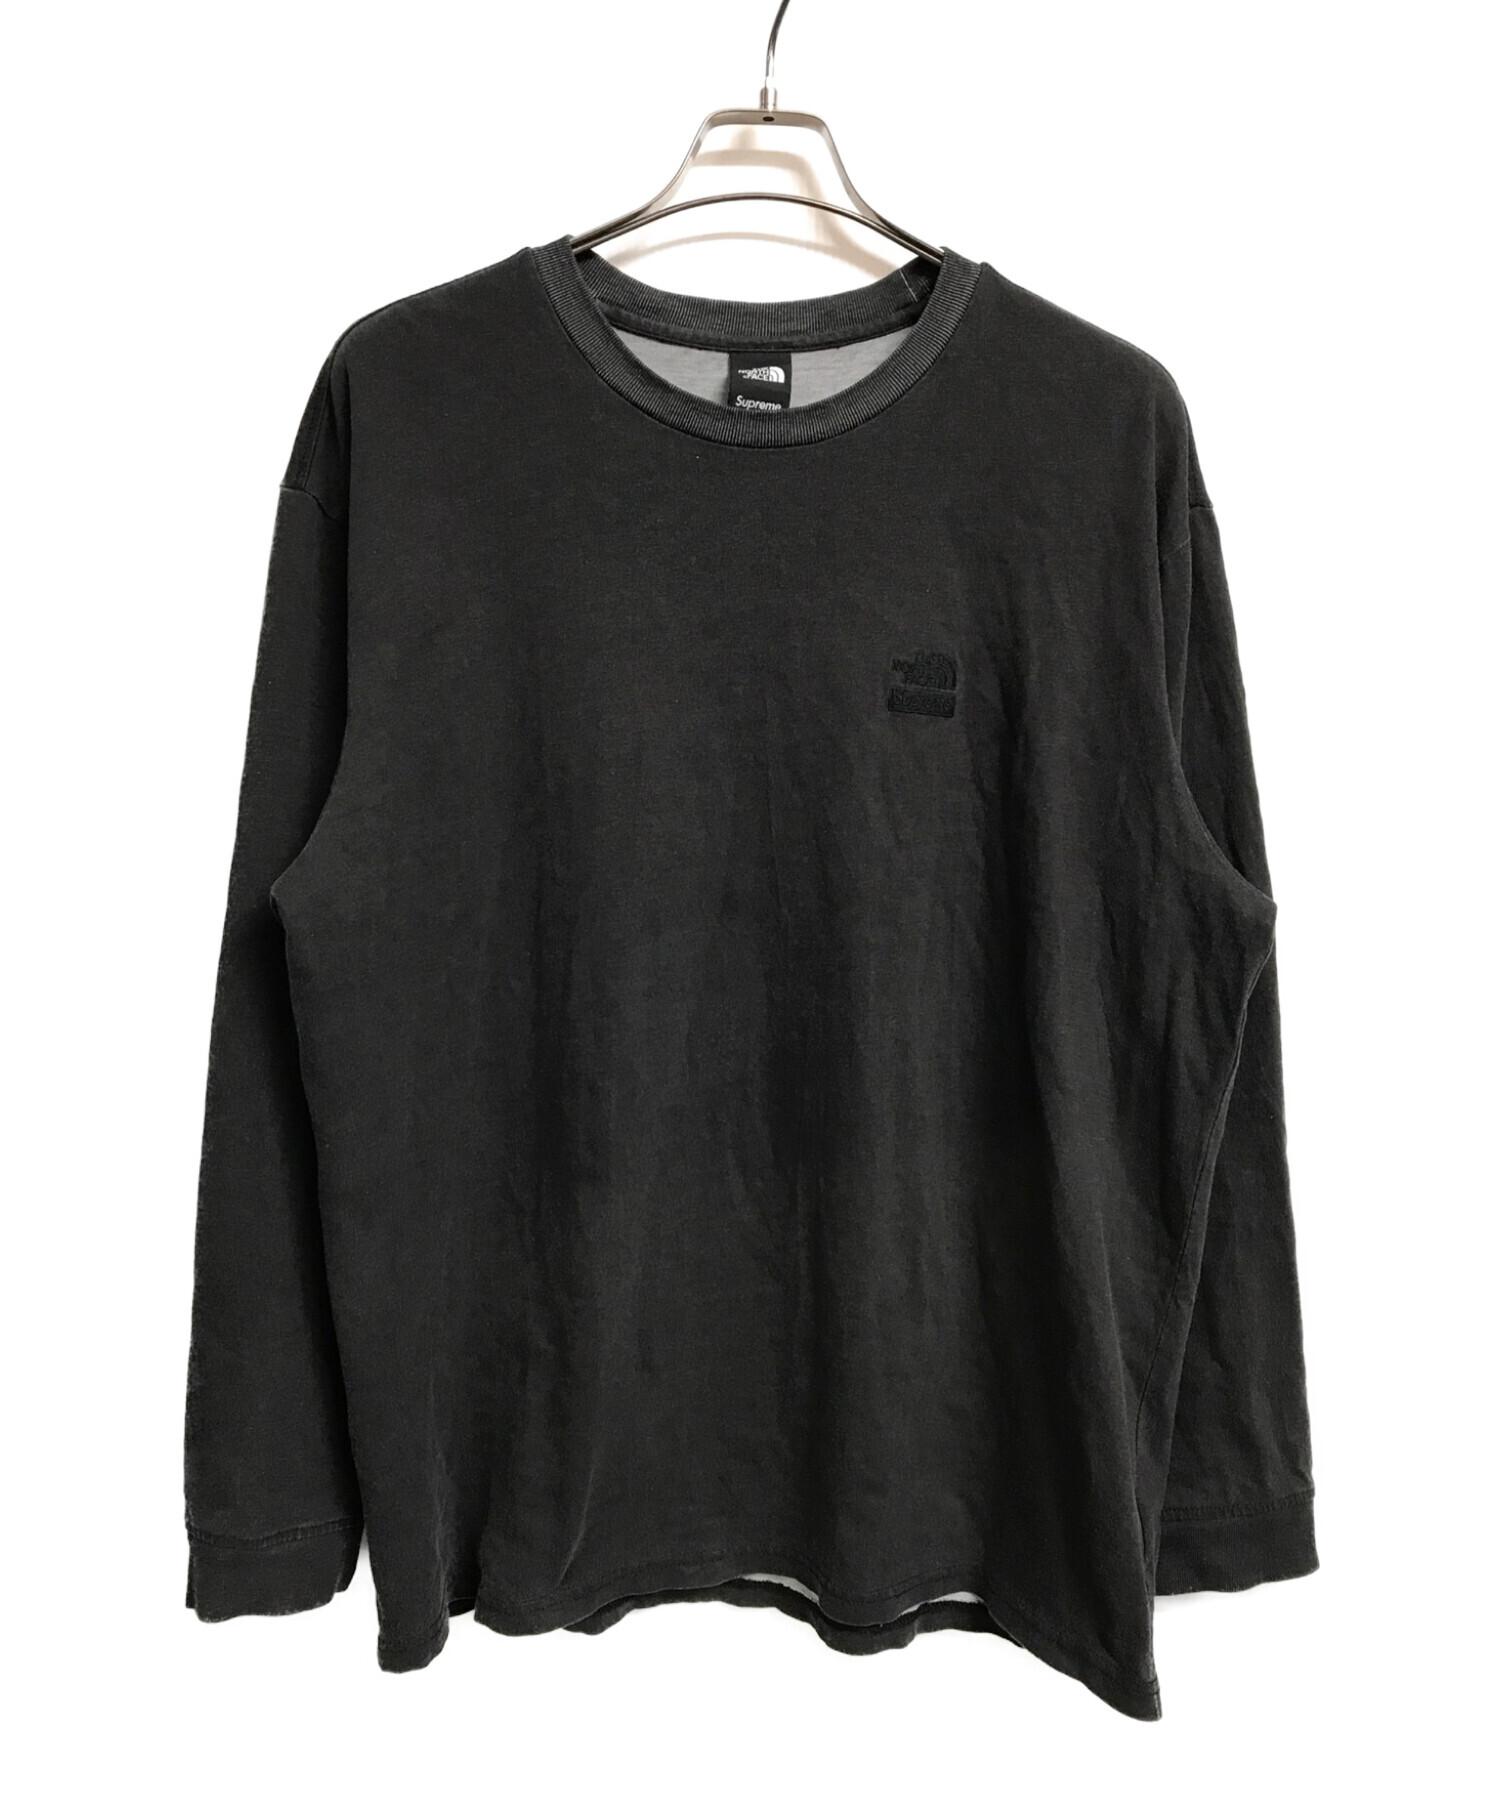 Supreme ノースフェイス Pigment ロンT tシャツ 黒